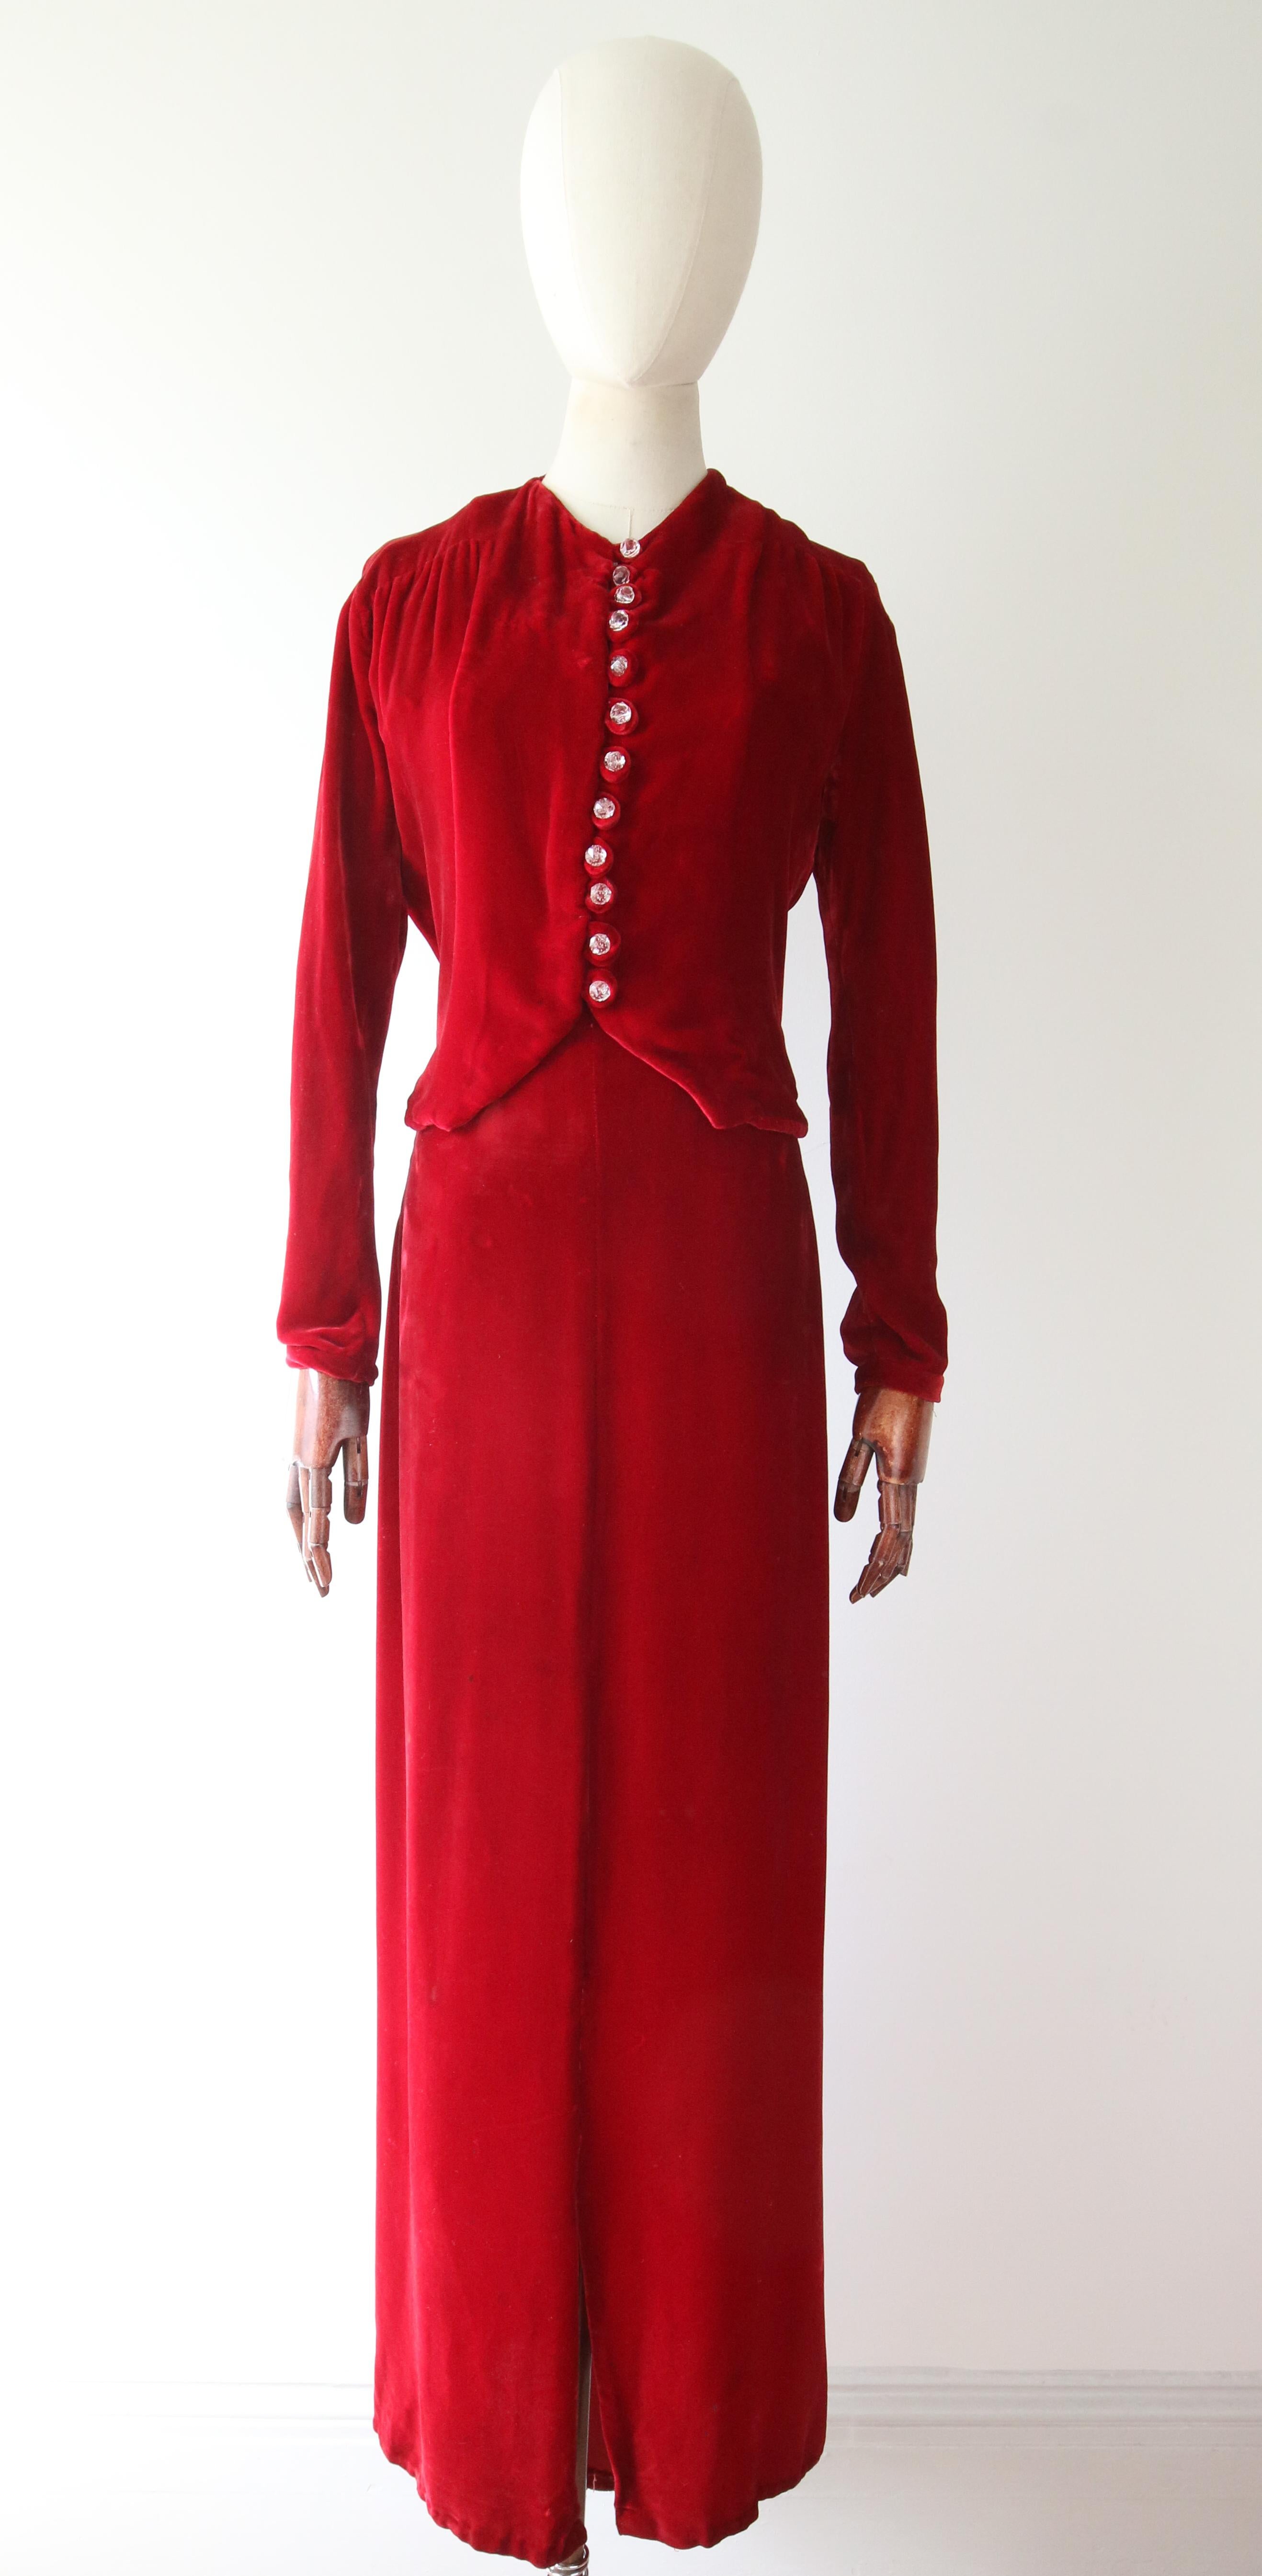 Vintage 1930's red velvet dress and jacket 1930's bias cut UK 6- 8 US 2-4 For Sale 5